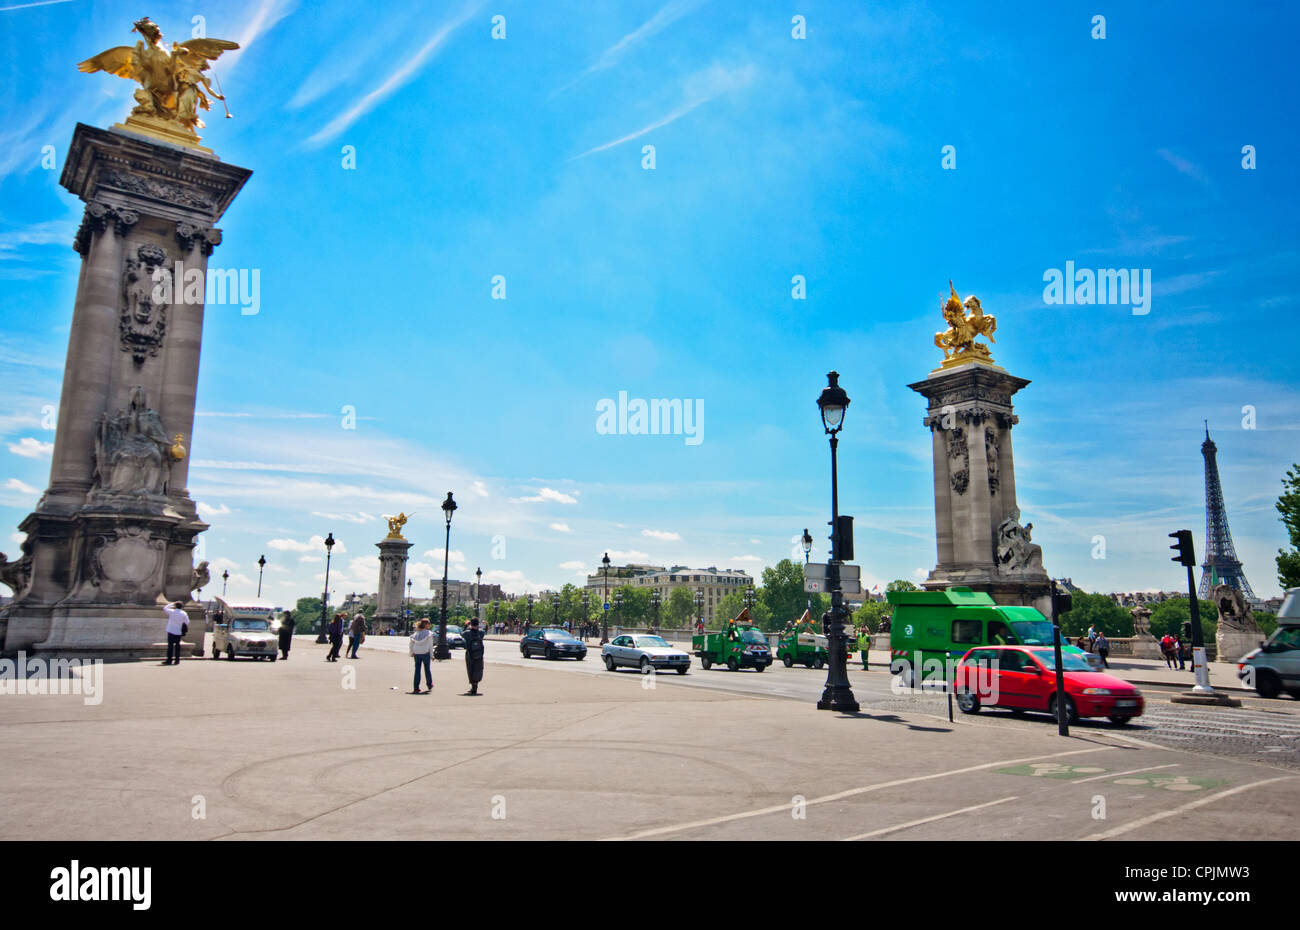 Paris, France. Piliers près de pont de la concorde pont sur la Seine. La Tour Eiffel est visible sur la droite. Banque D'Images